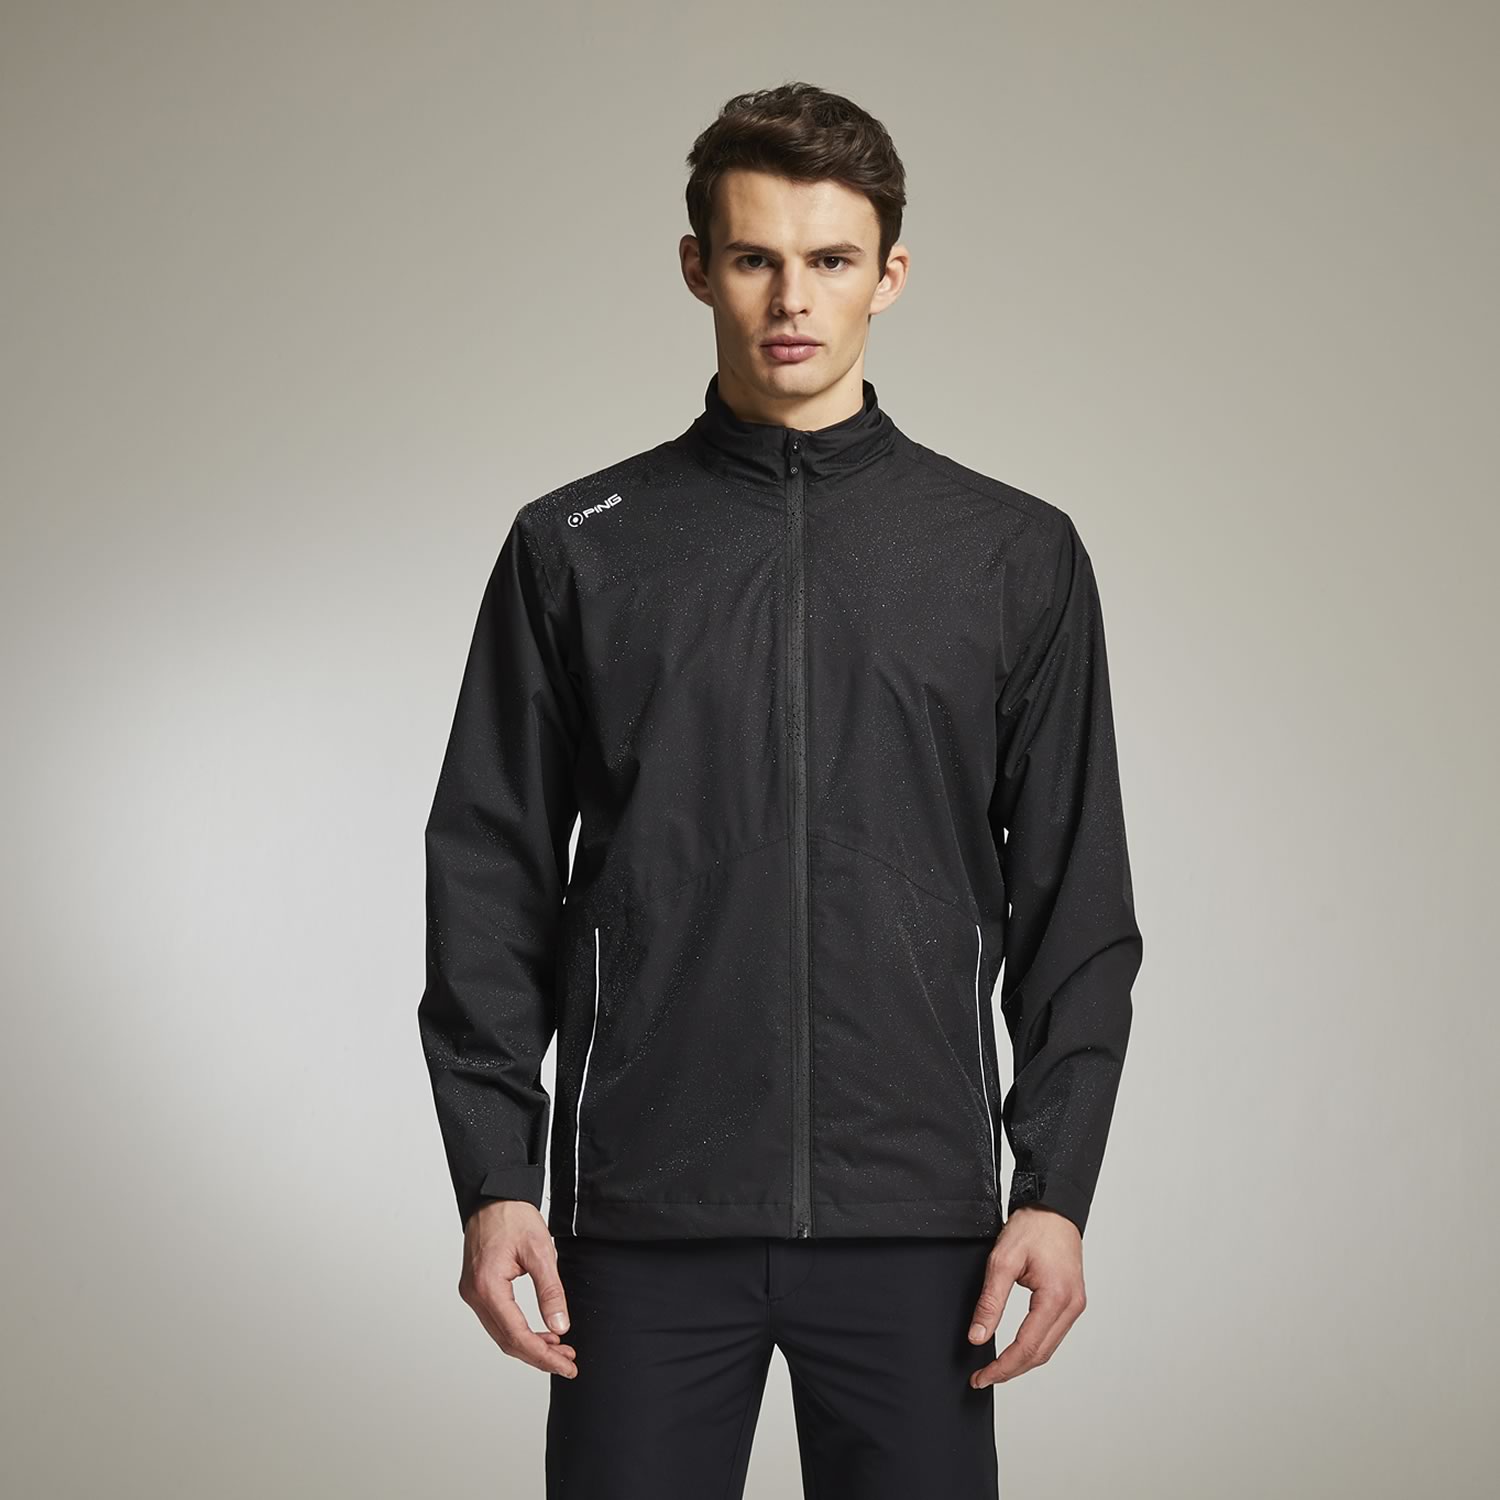 PING Sensordry Waterproof Jacket Black | Scottsdale Golf